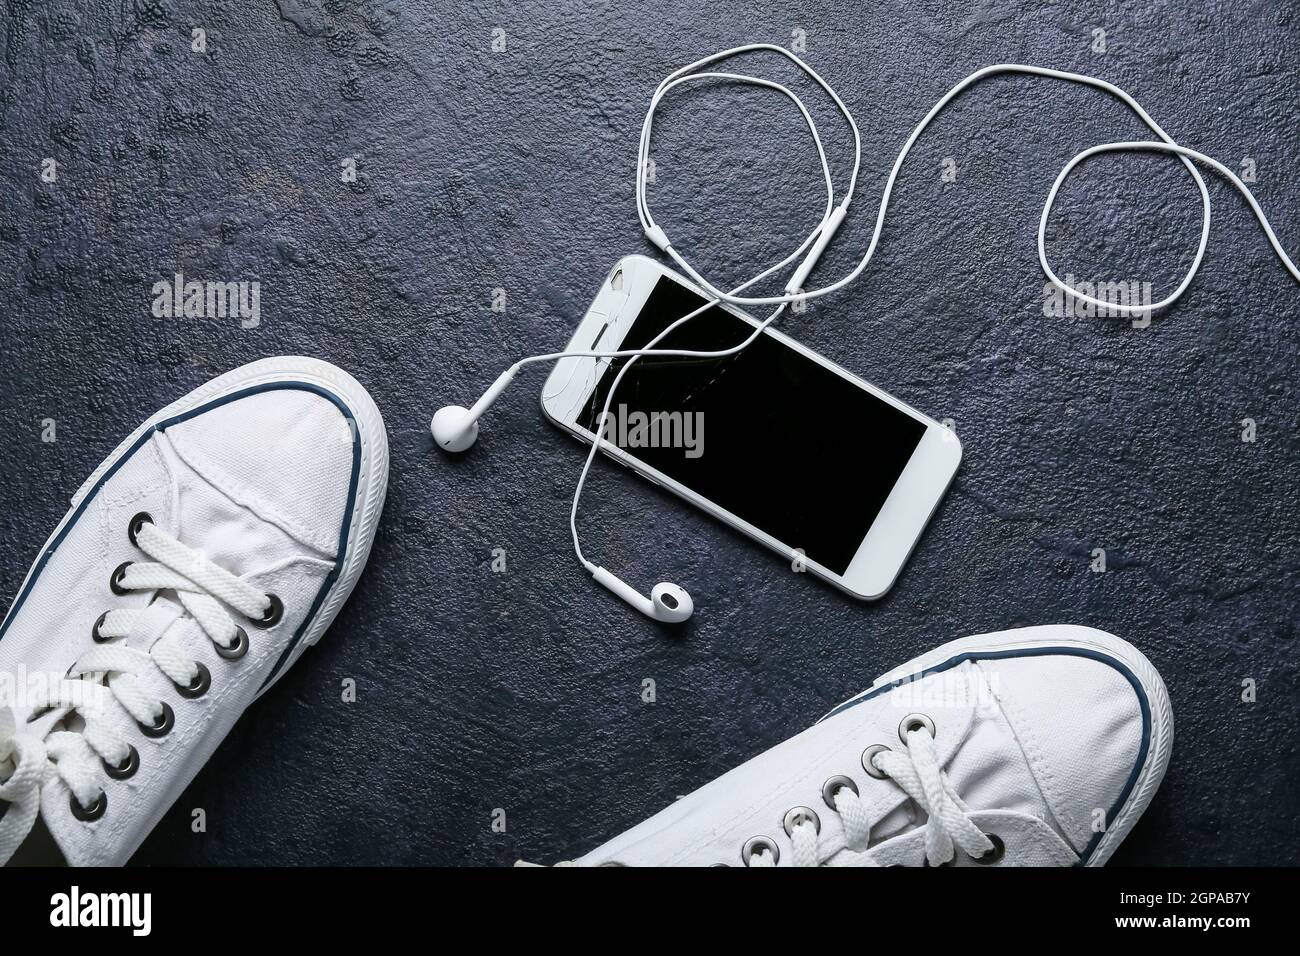 Handy mit kaputten Bildschirm, Kopfhörer und Schuhe auf dunklem Hintergrund  Stockfotografie - Alamy